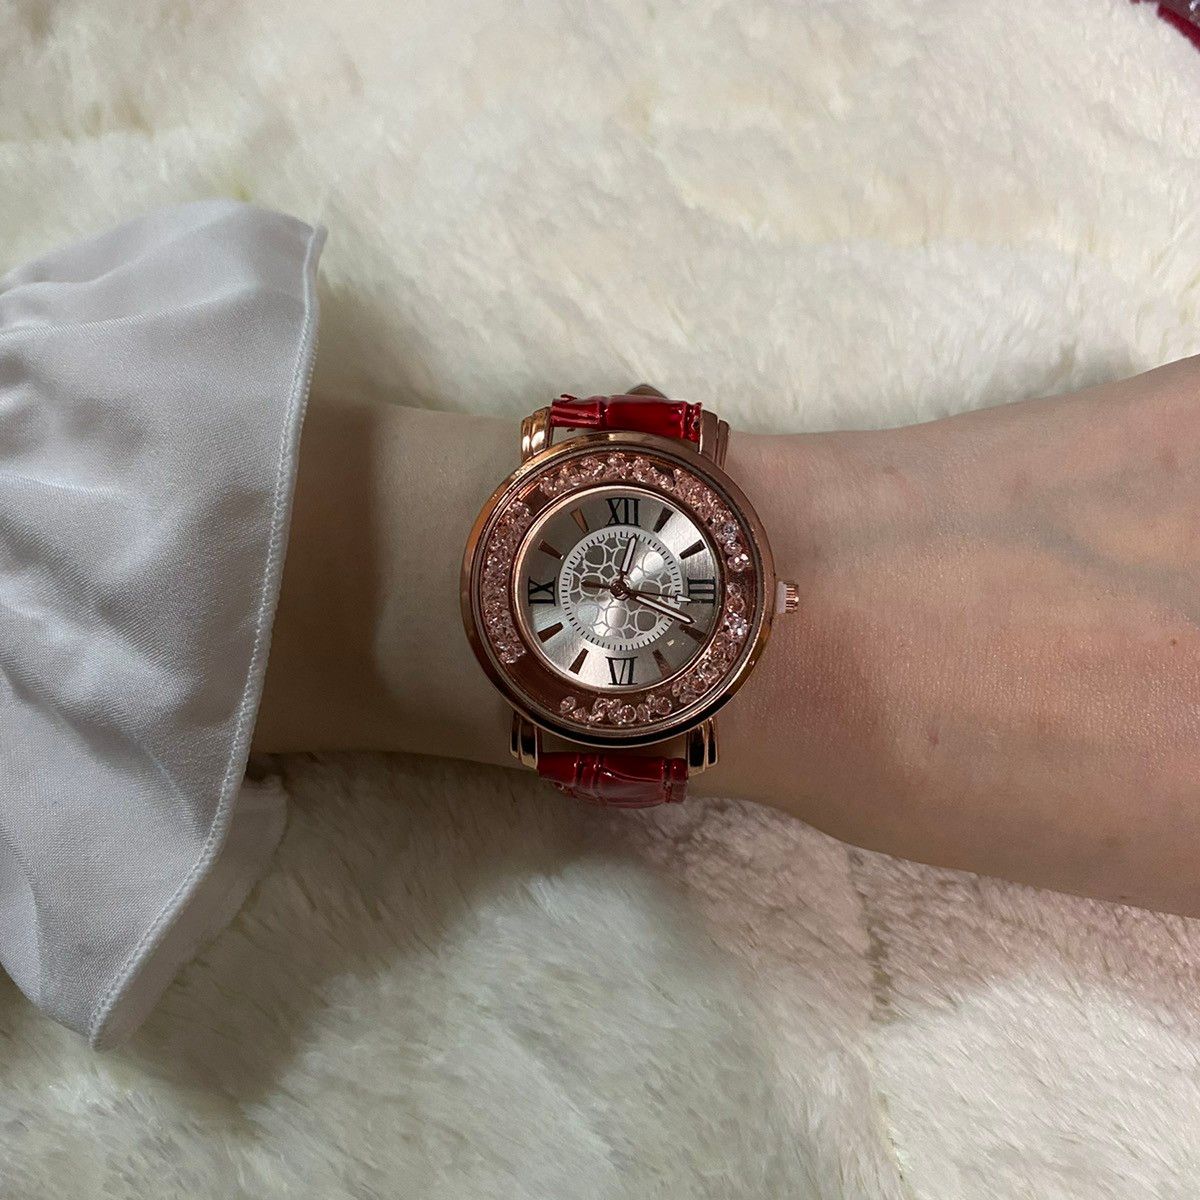 732【人気商品】レディース 腕時計 クォーツ 赤色 お洒落 アイテム